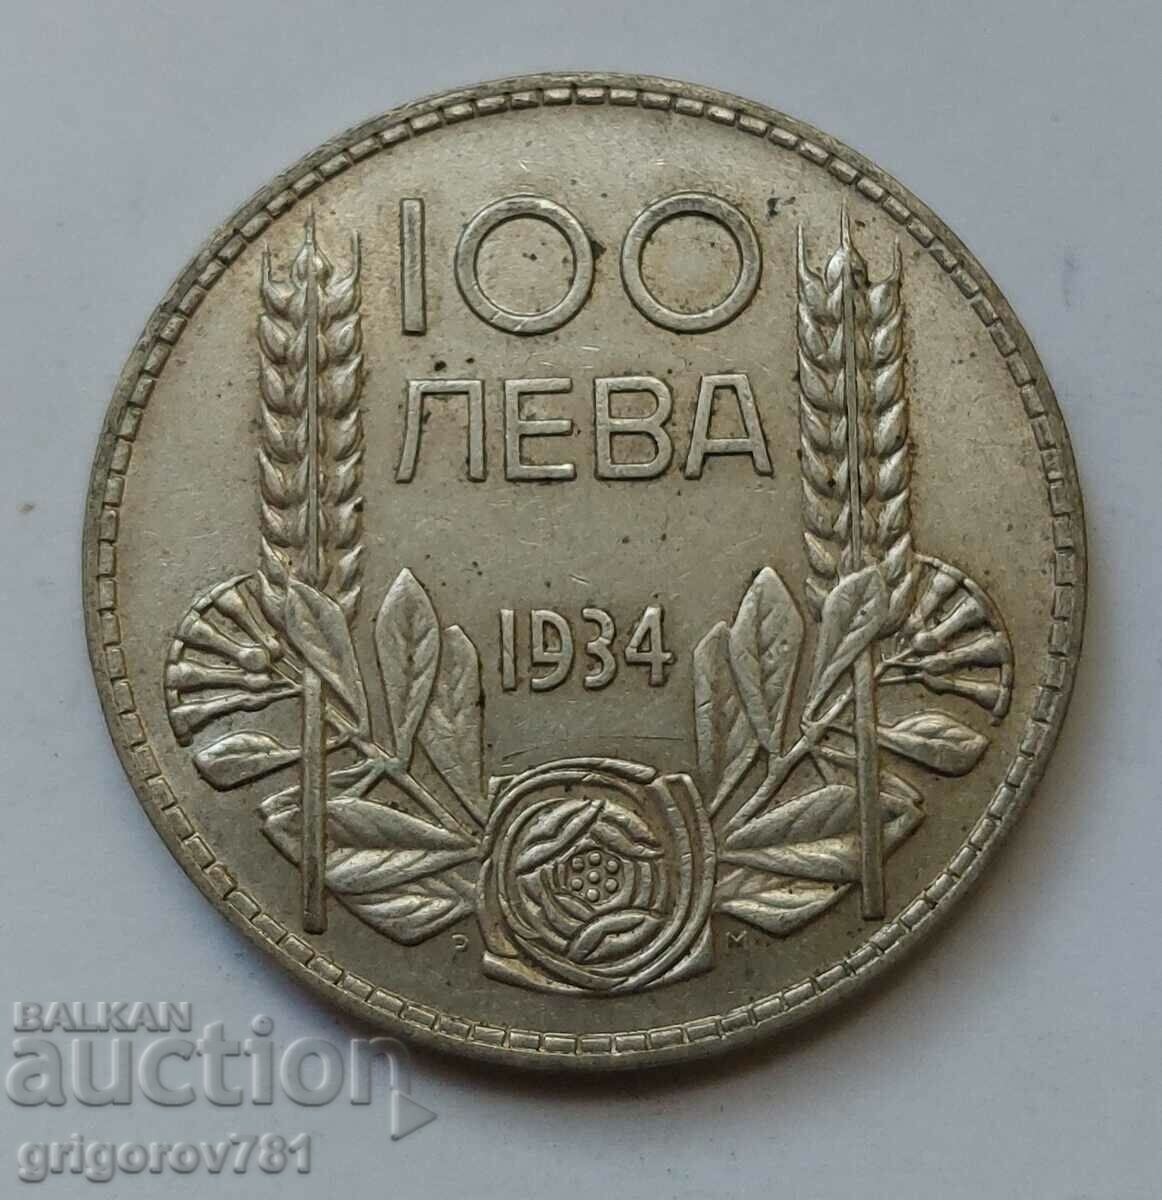 Ασήμι 100 λέβα Βουλγαρία 1934 - ασημένιο νόμισμα #100